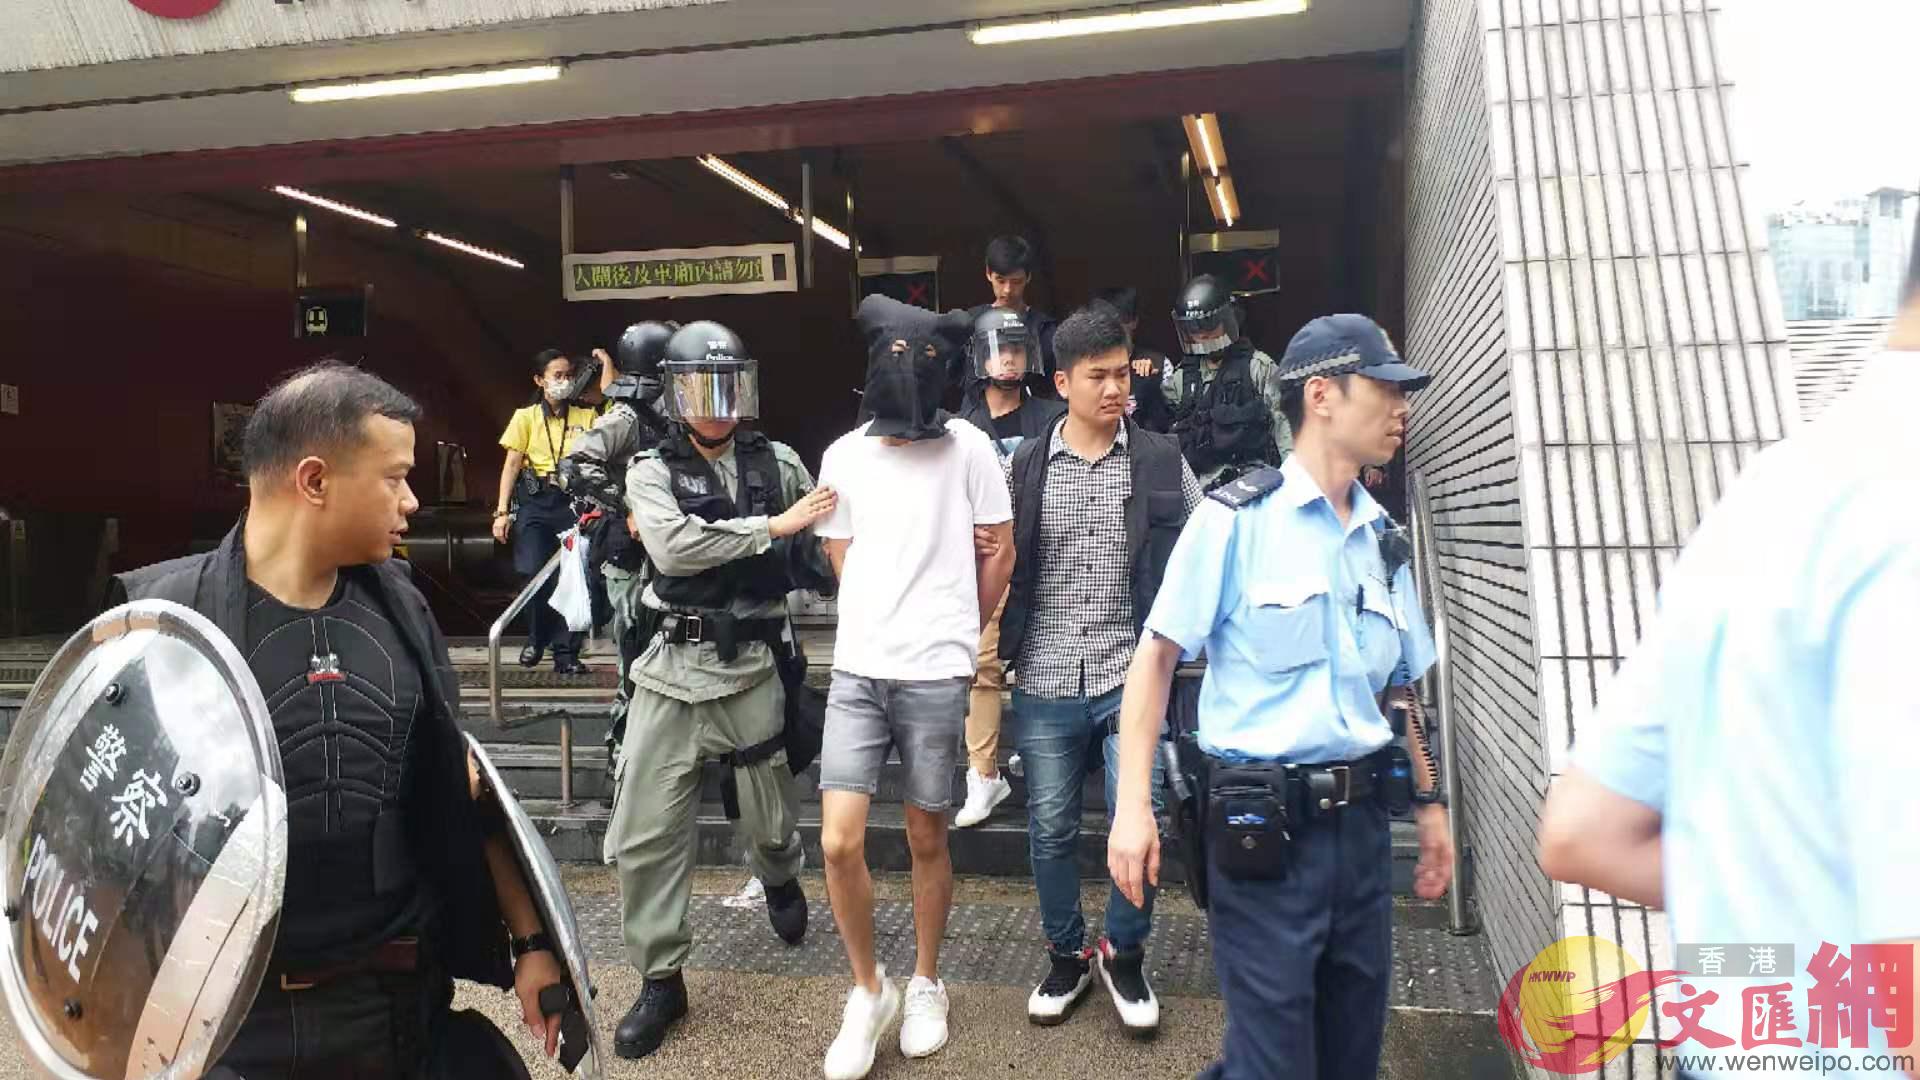 3人在荔景站涉違禁制令被拘捕]大公文匯全媒體記者攝^